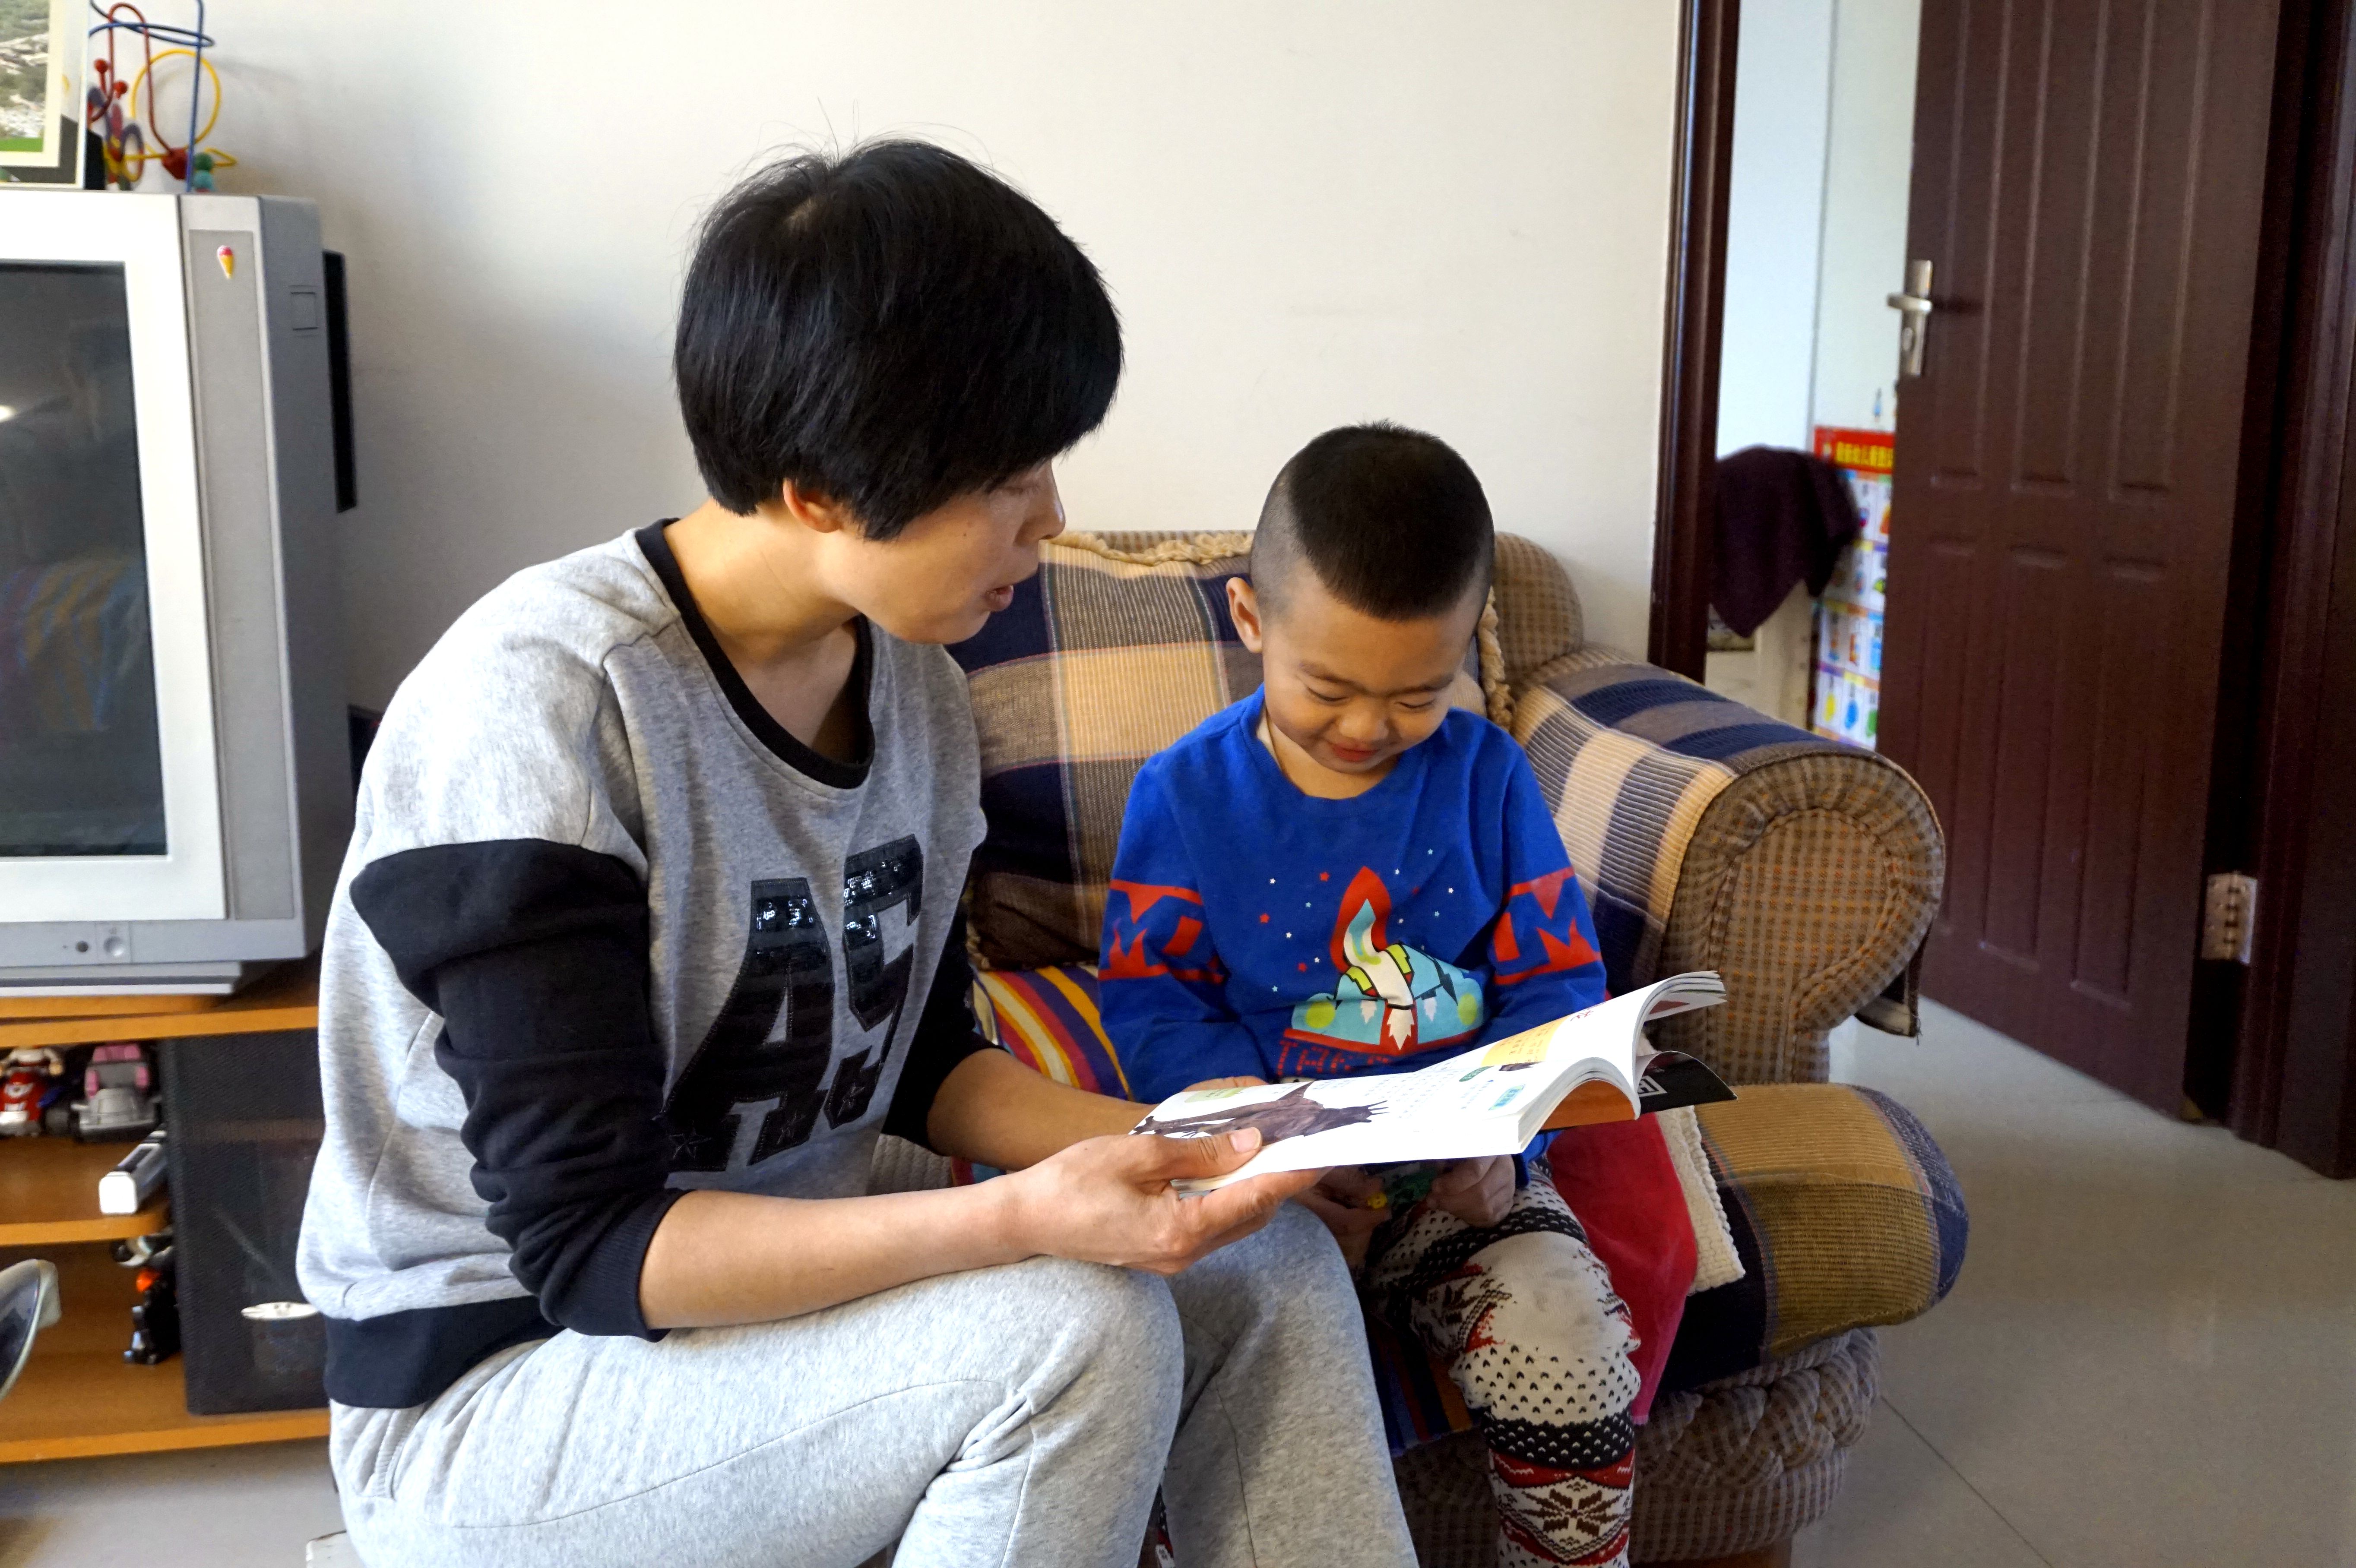 记录一位内蒙古80后妈妈陪读的一天图集